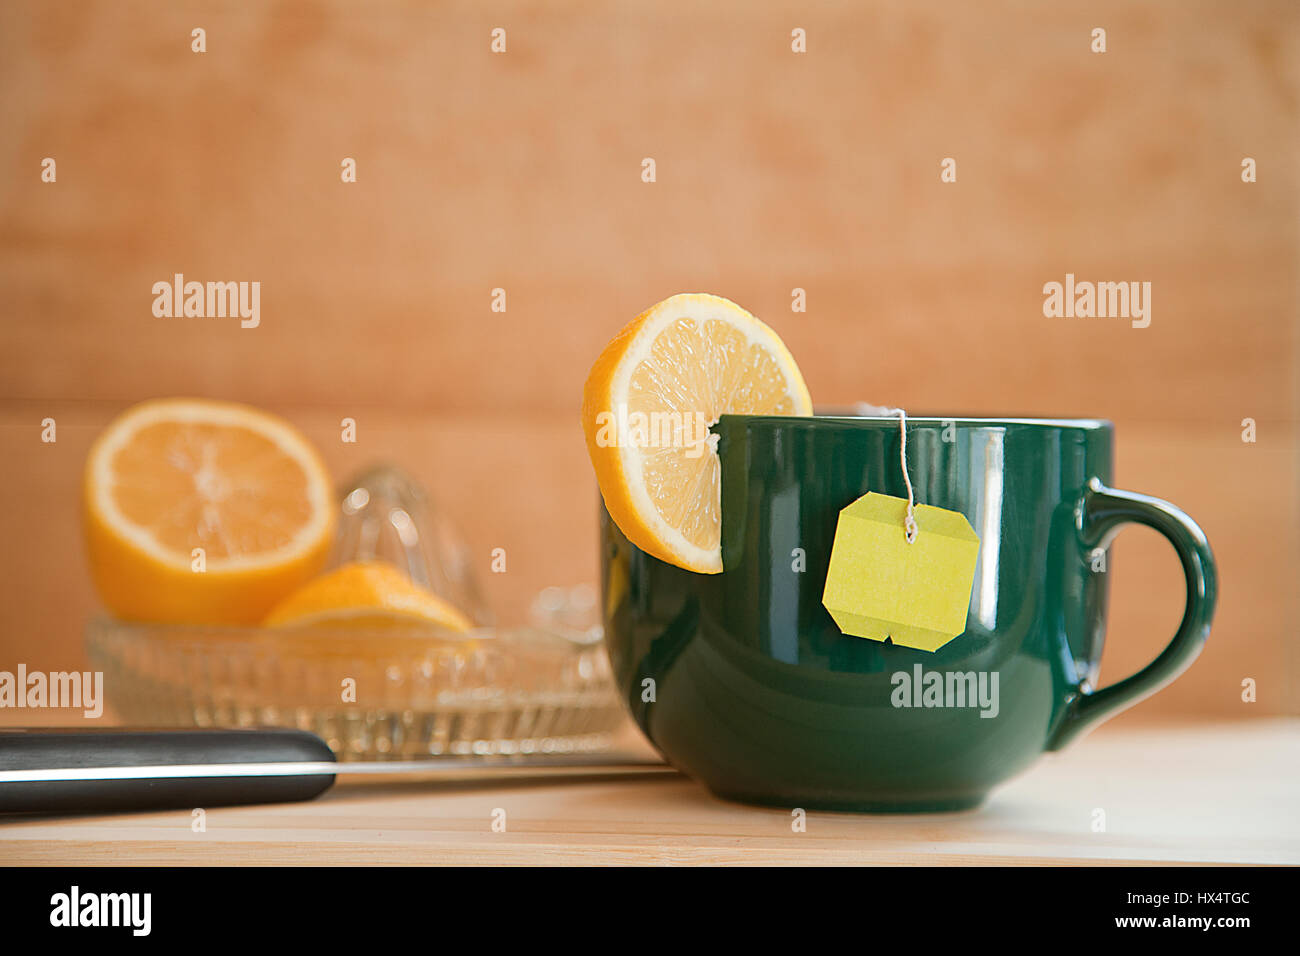 Tasse Tee mit Zitrone in Scheiben geschnittene Zitrone mit Entsafter auf einem hölzernen Hintergrund. Stockfoto